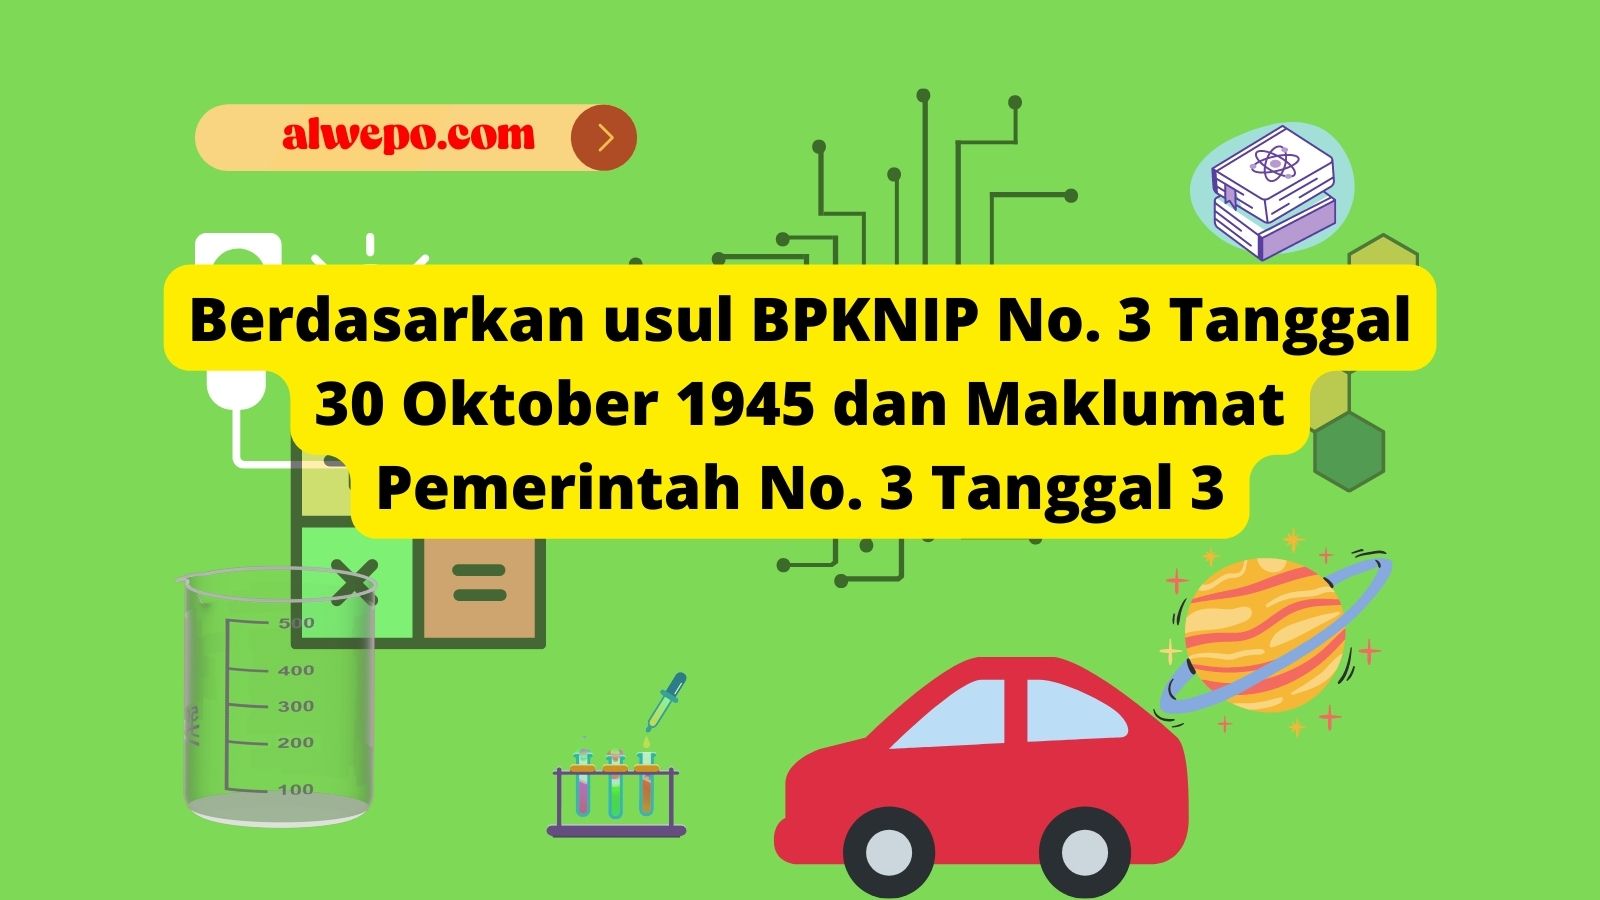 Berdasarkan usul BPKNIP No. 3 Tanggal 30 Oktober 1945 dan Maklumat Pemerintah No. 3 Tanggal 3